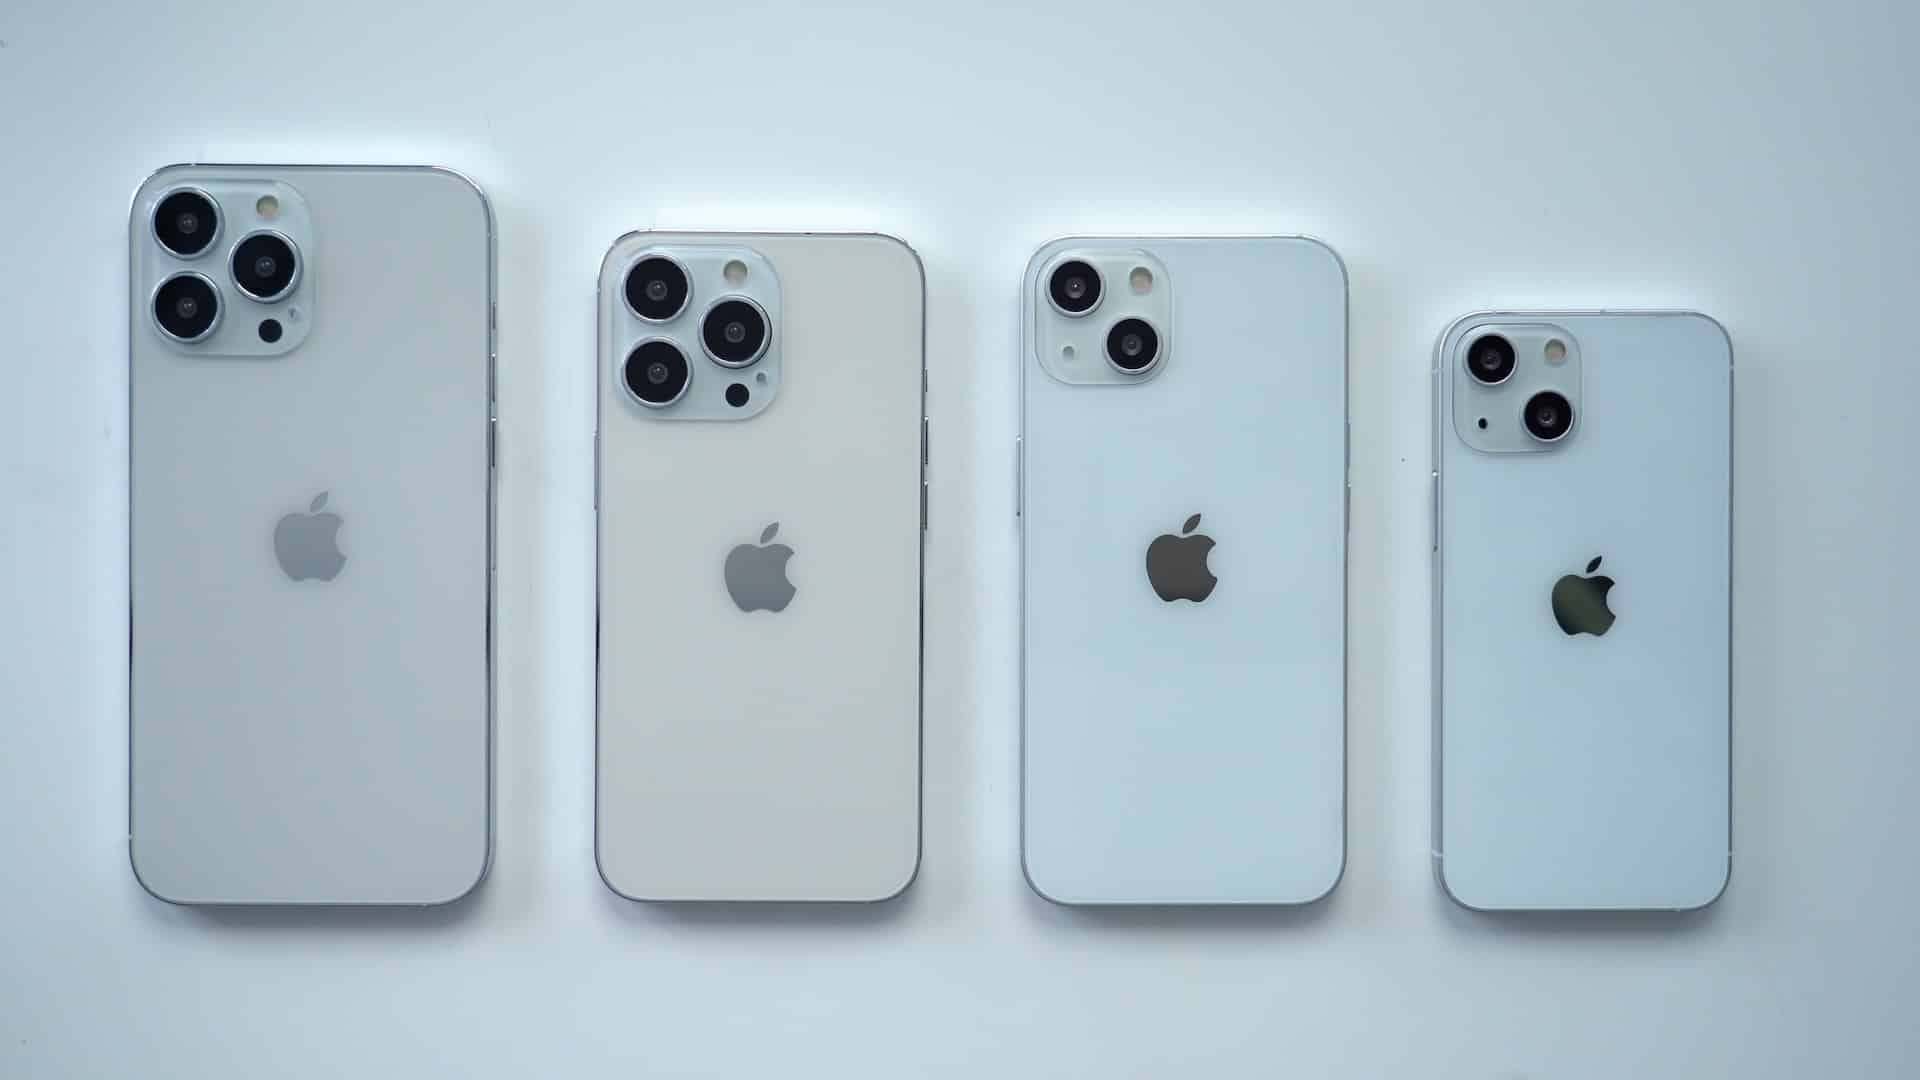 iPhone 13 dự kiến ra mắt vào 17/9 và AirPods 3 vào 30/9